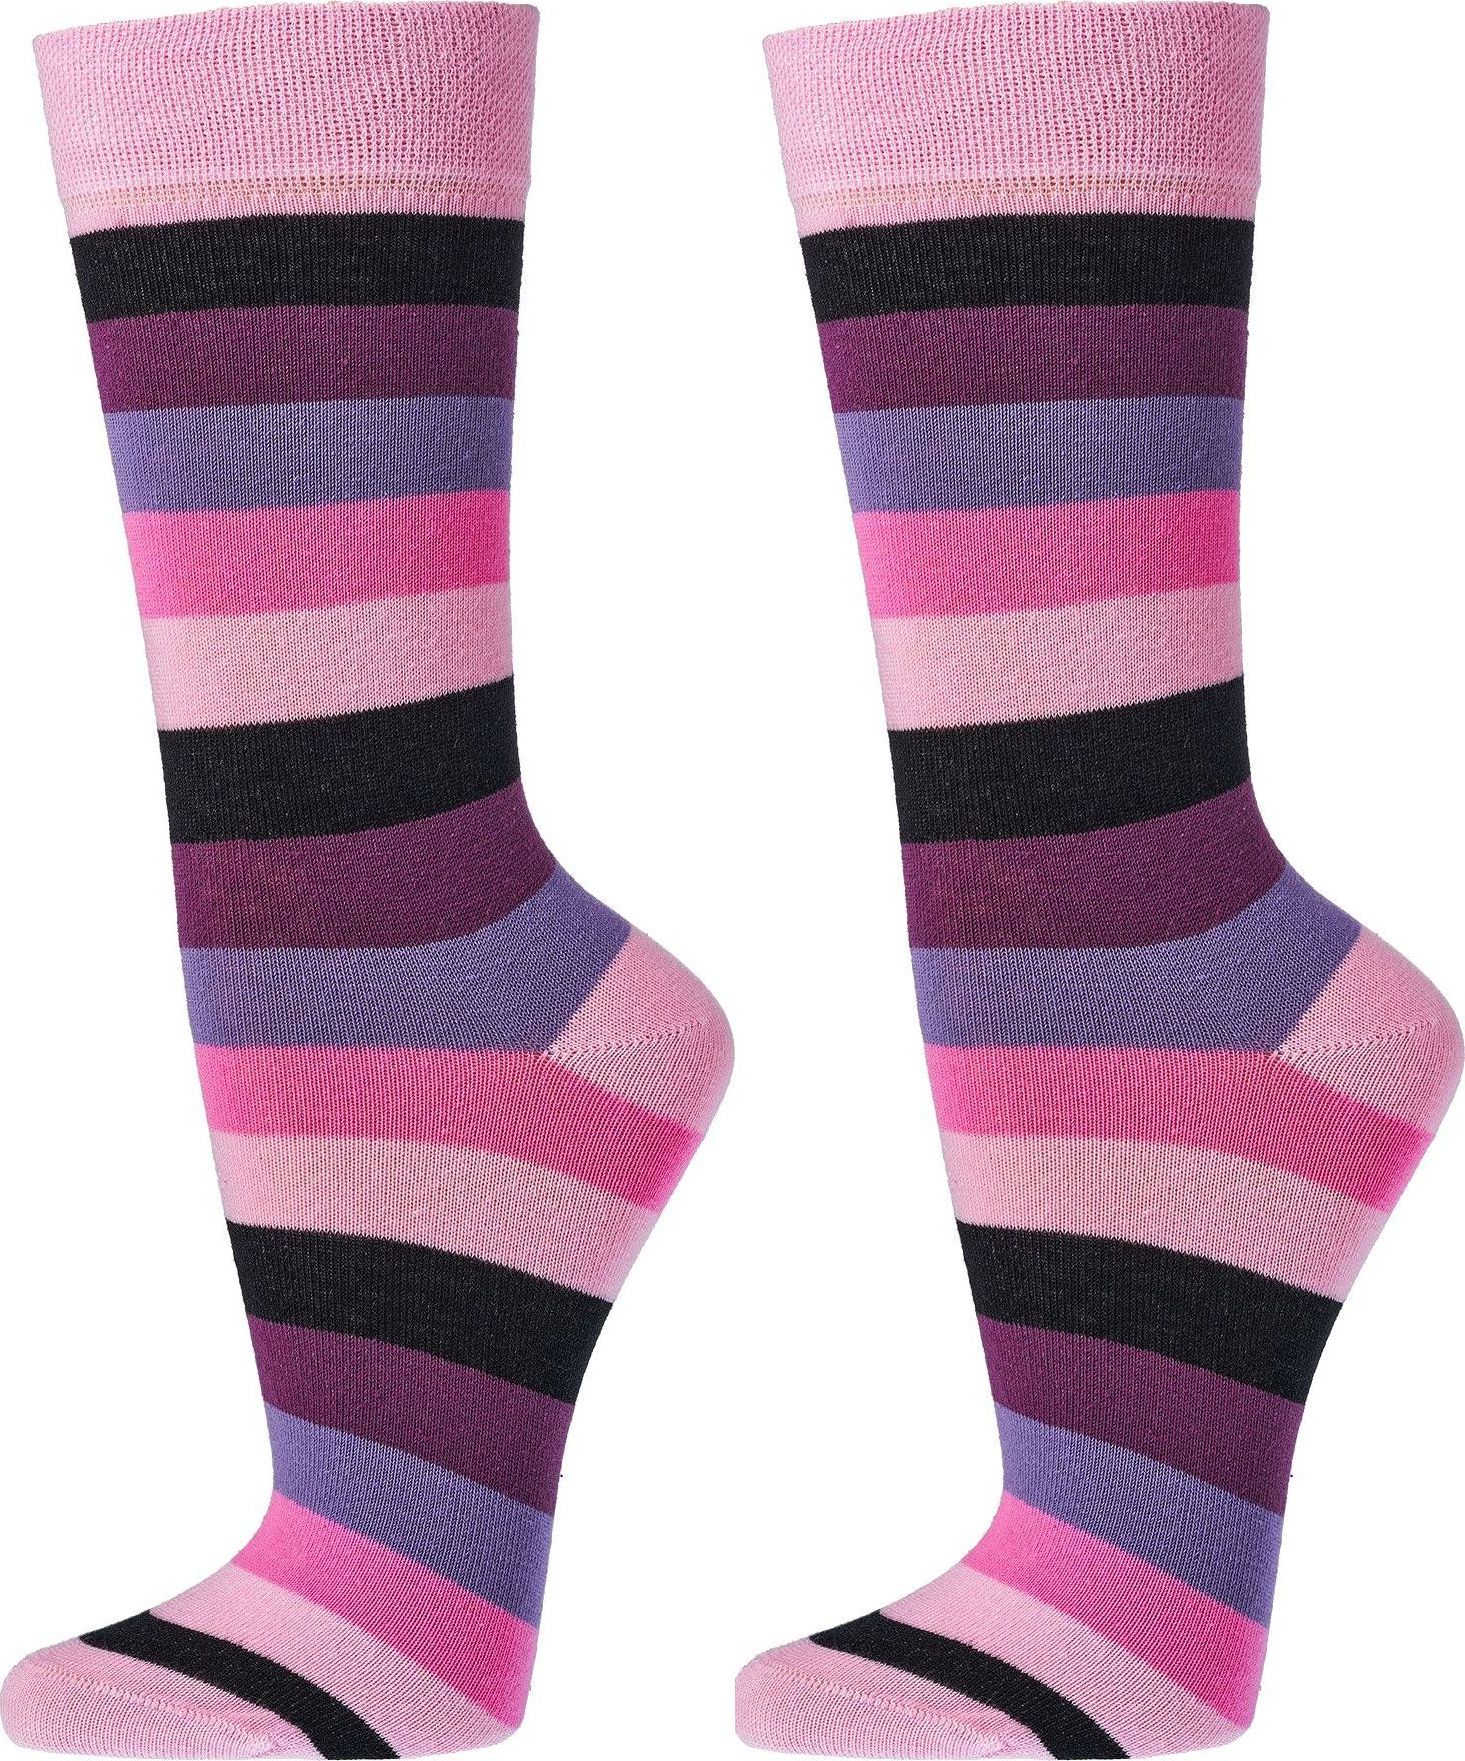 Trend-Socken Bio Baumwolle für Teenager, Damen und Herren 2 oder 4 Paar